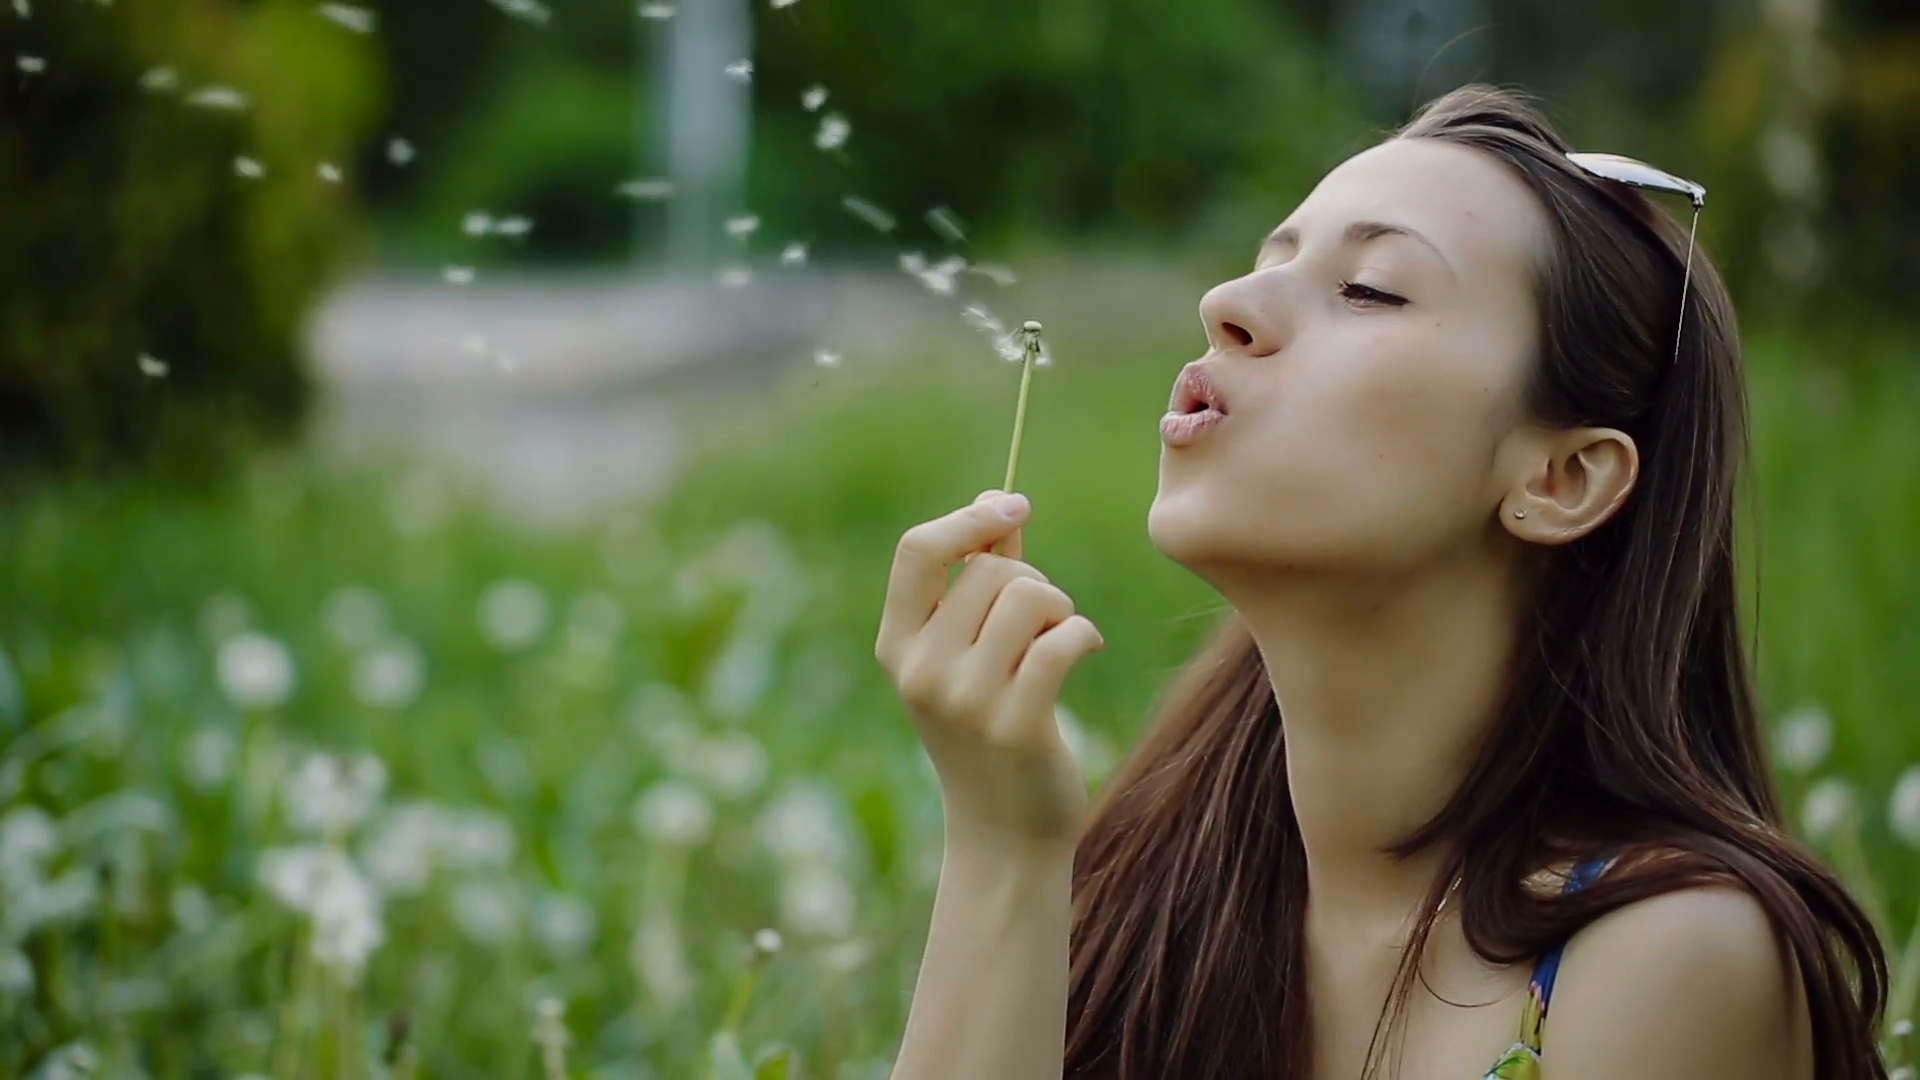 Woman Blowing Dandelion on a Summer Field Stock Video Footage ...